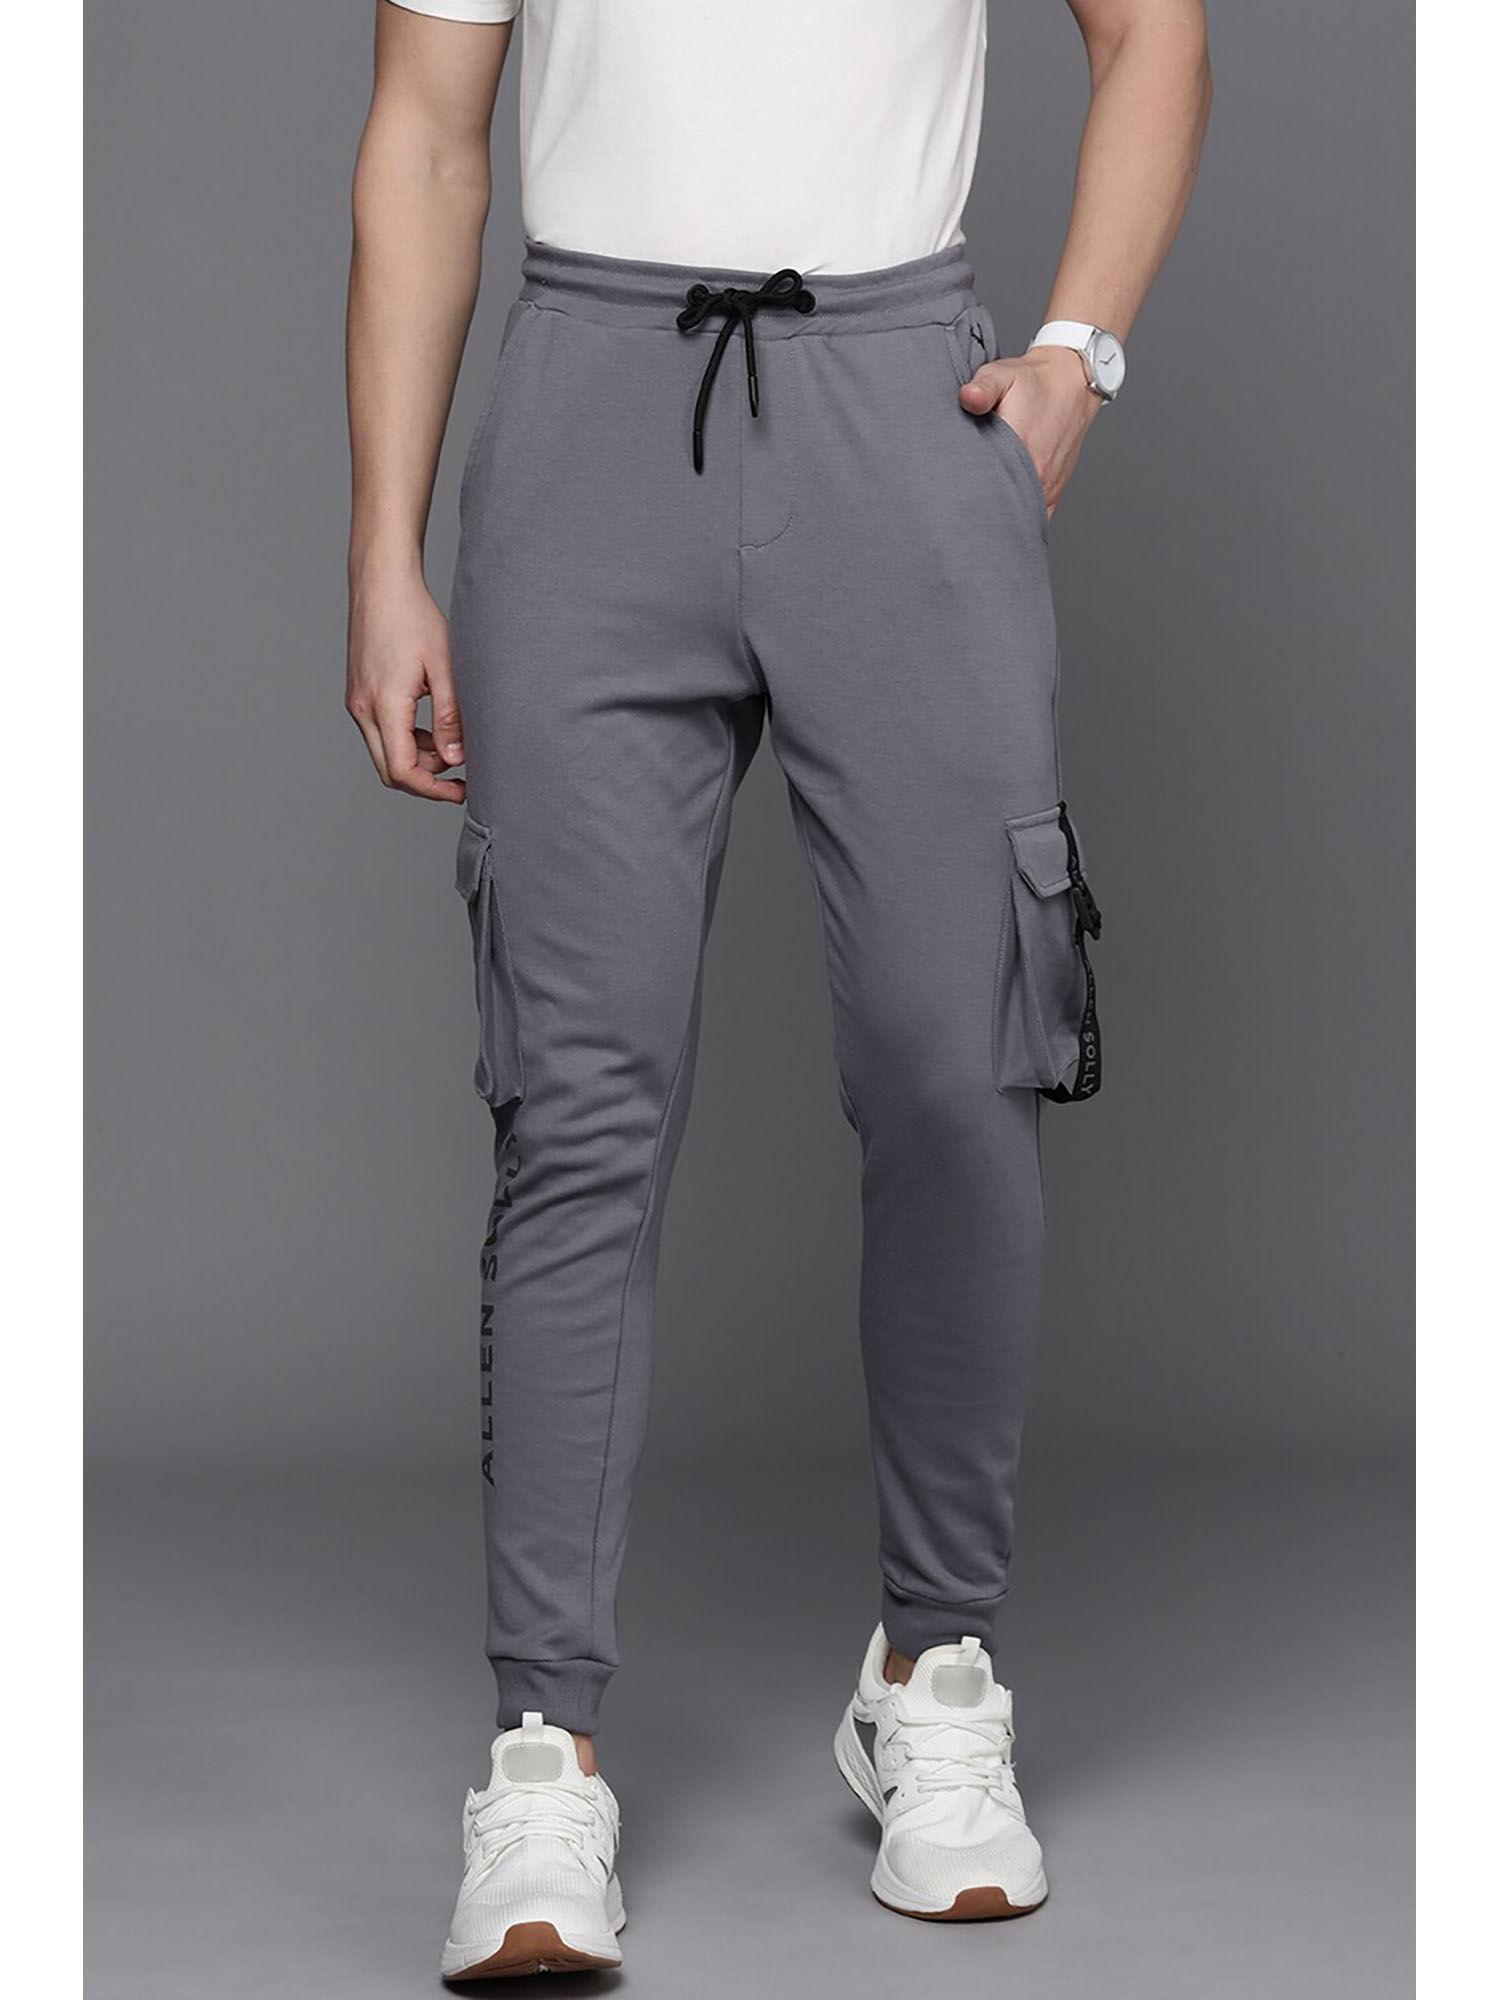 men-solid-regular-fit-grey-jogger-pants